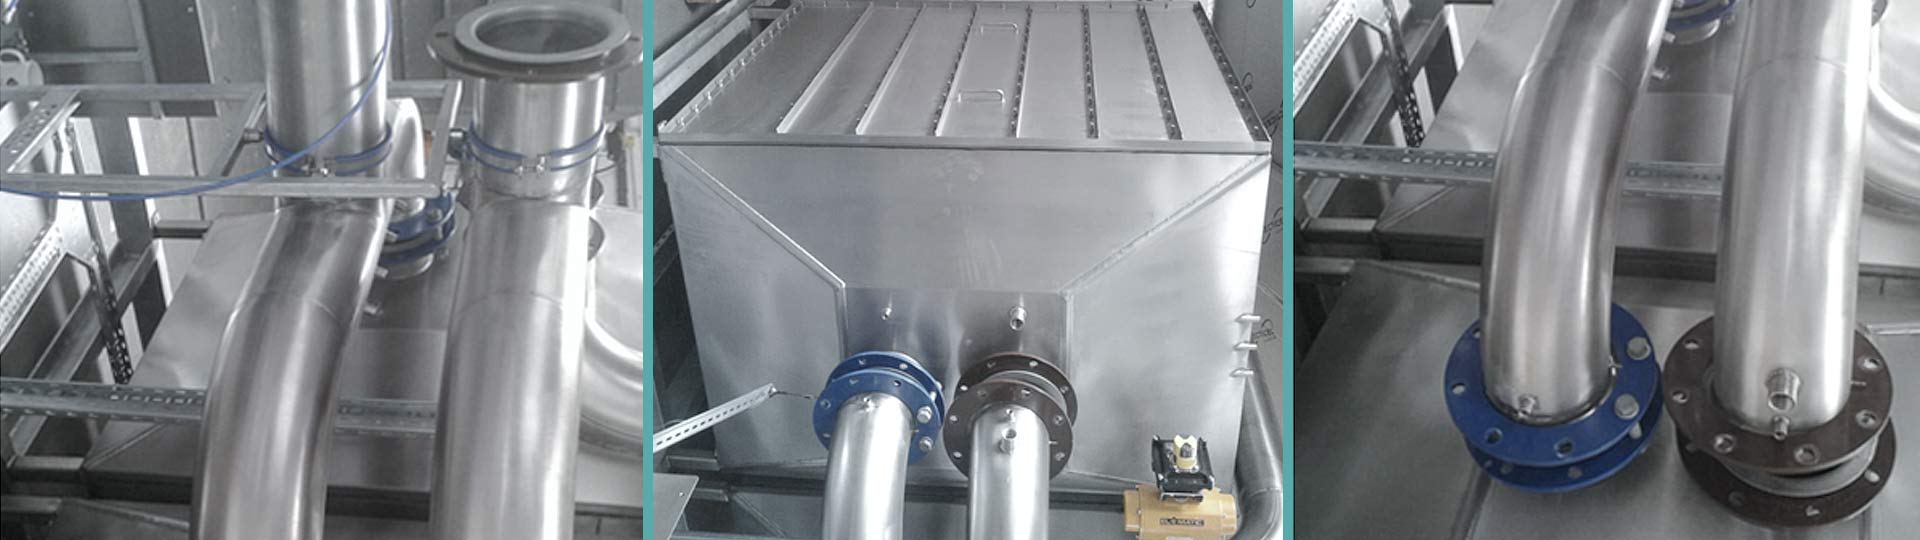 Sheet metal fabrication tanking